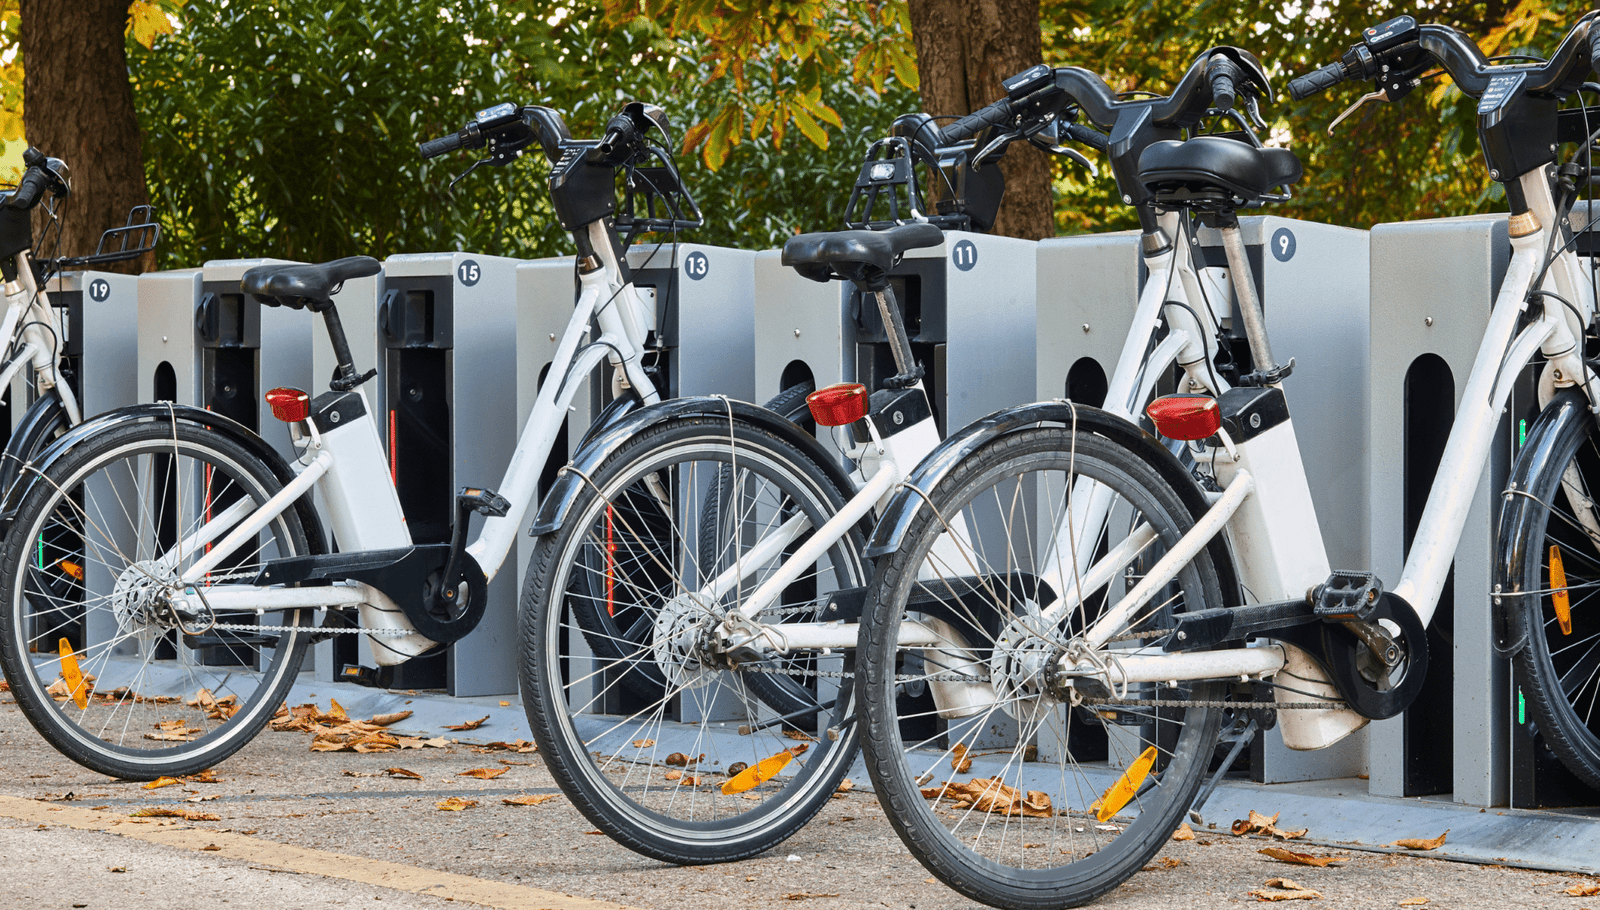 Borne de recharge pour des vélos électriques